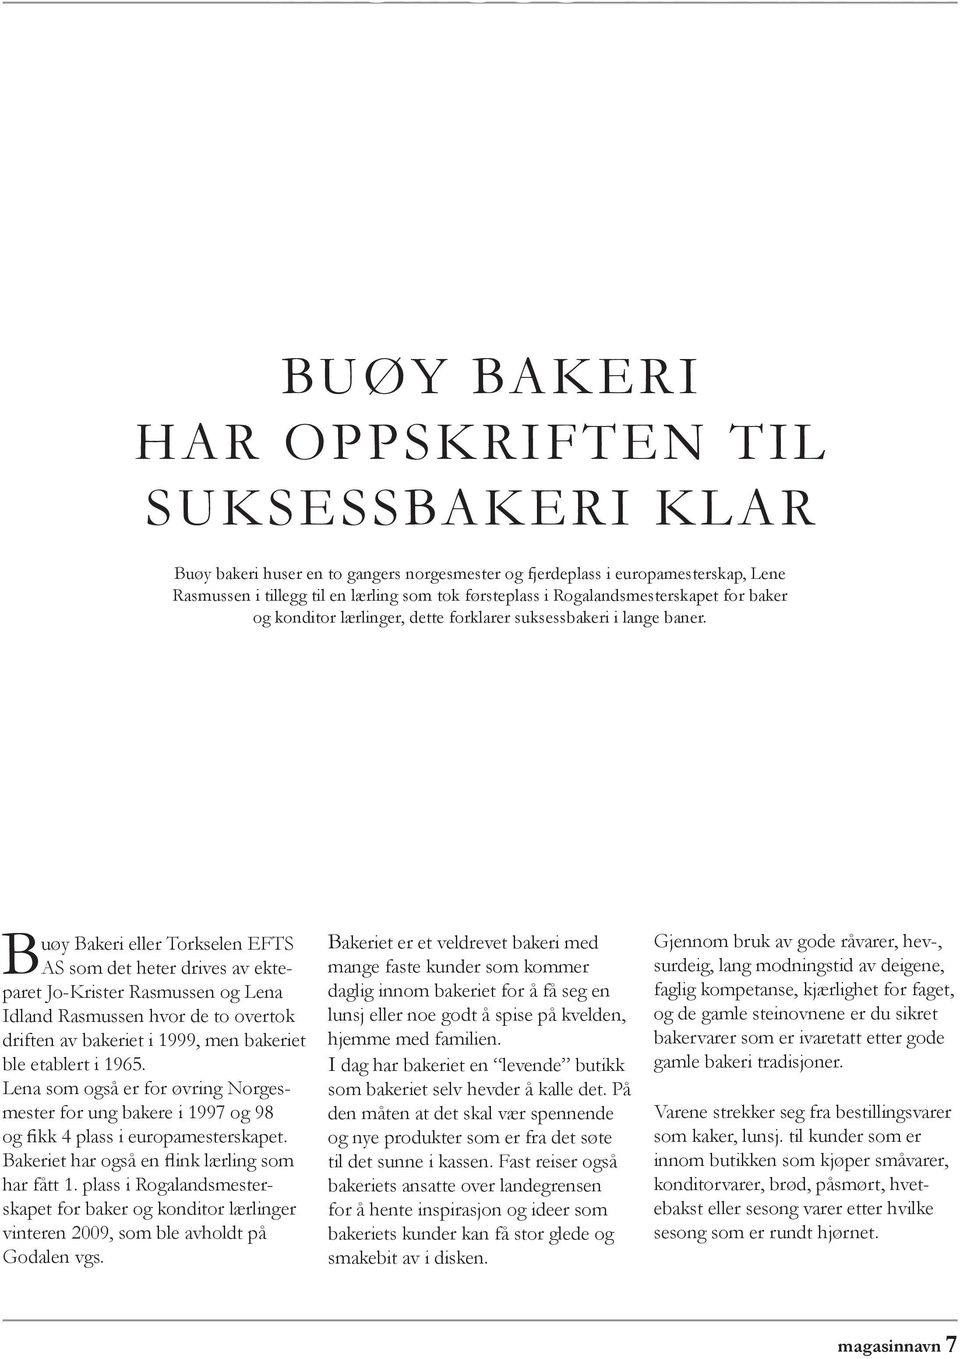 Buøy Bakeri eller Torkselen EFTS AS som det heter drives av ekteparet Jo-Krister Rasmussen og Lena Idland Rasmussen hvor de to overtok driften av bakeriet i 1999, men bakeriet ble etablert i 1965.